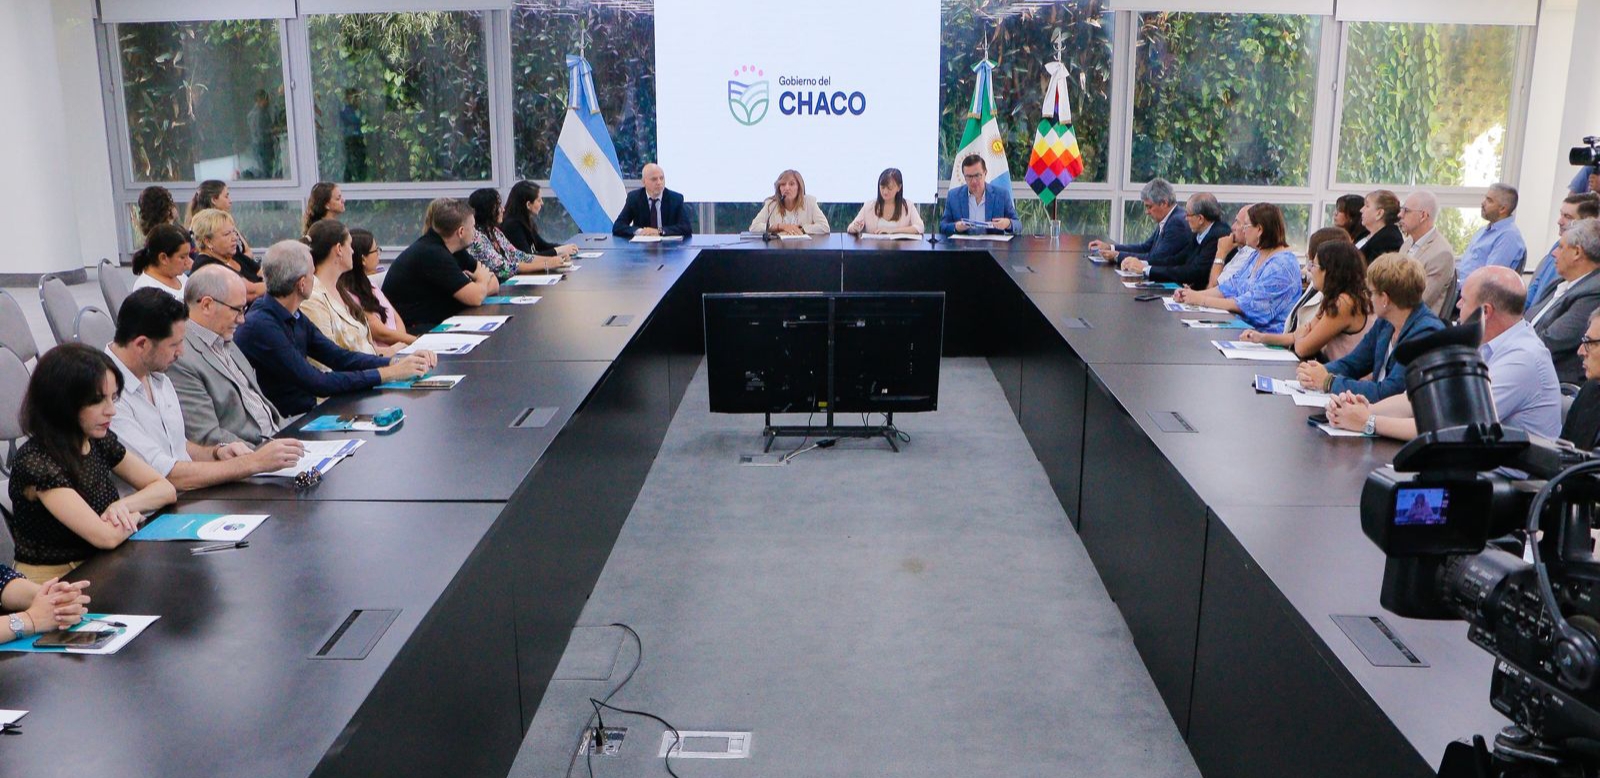 Ciencia Aplicada: El ICCTI presento los proyectos federales de innovación, seleccionados en Chaco 